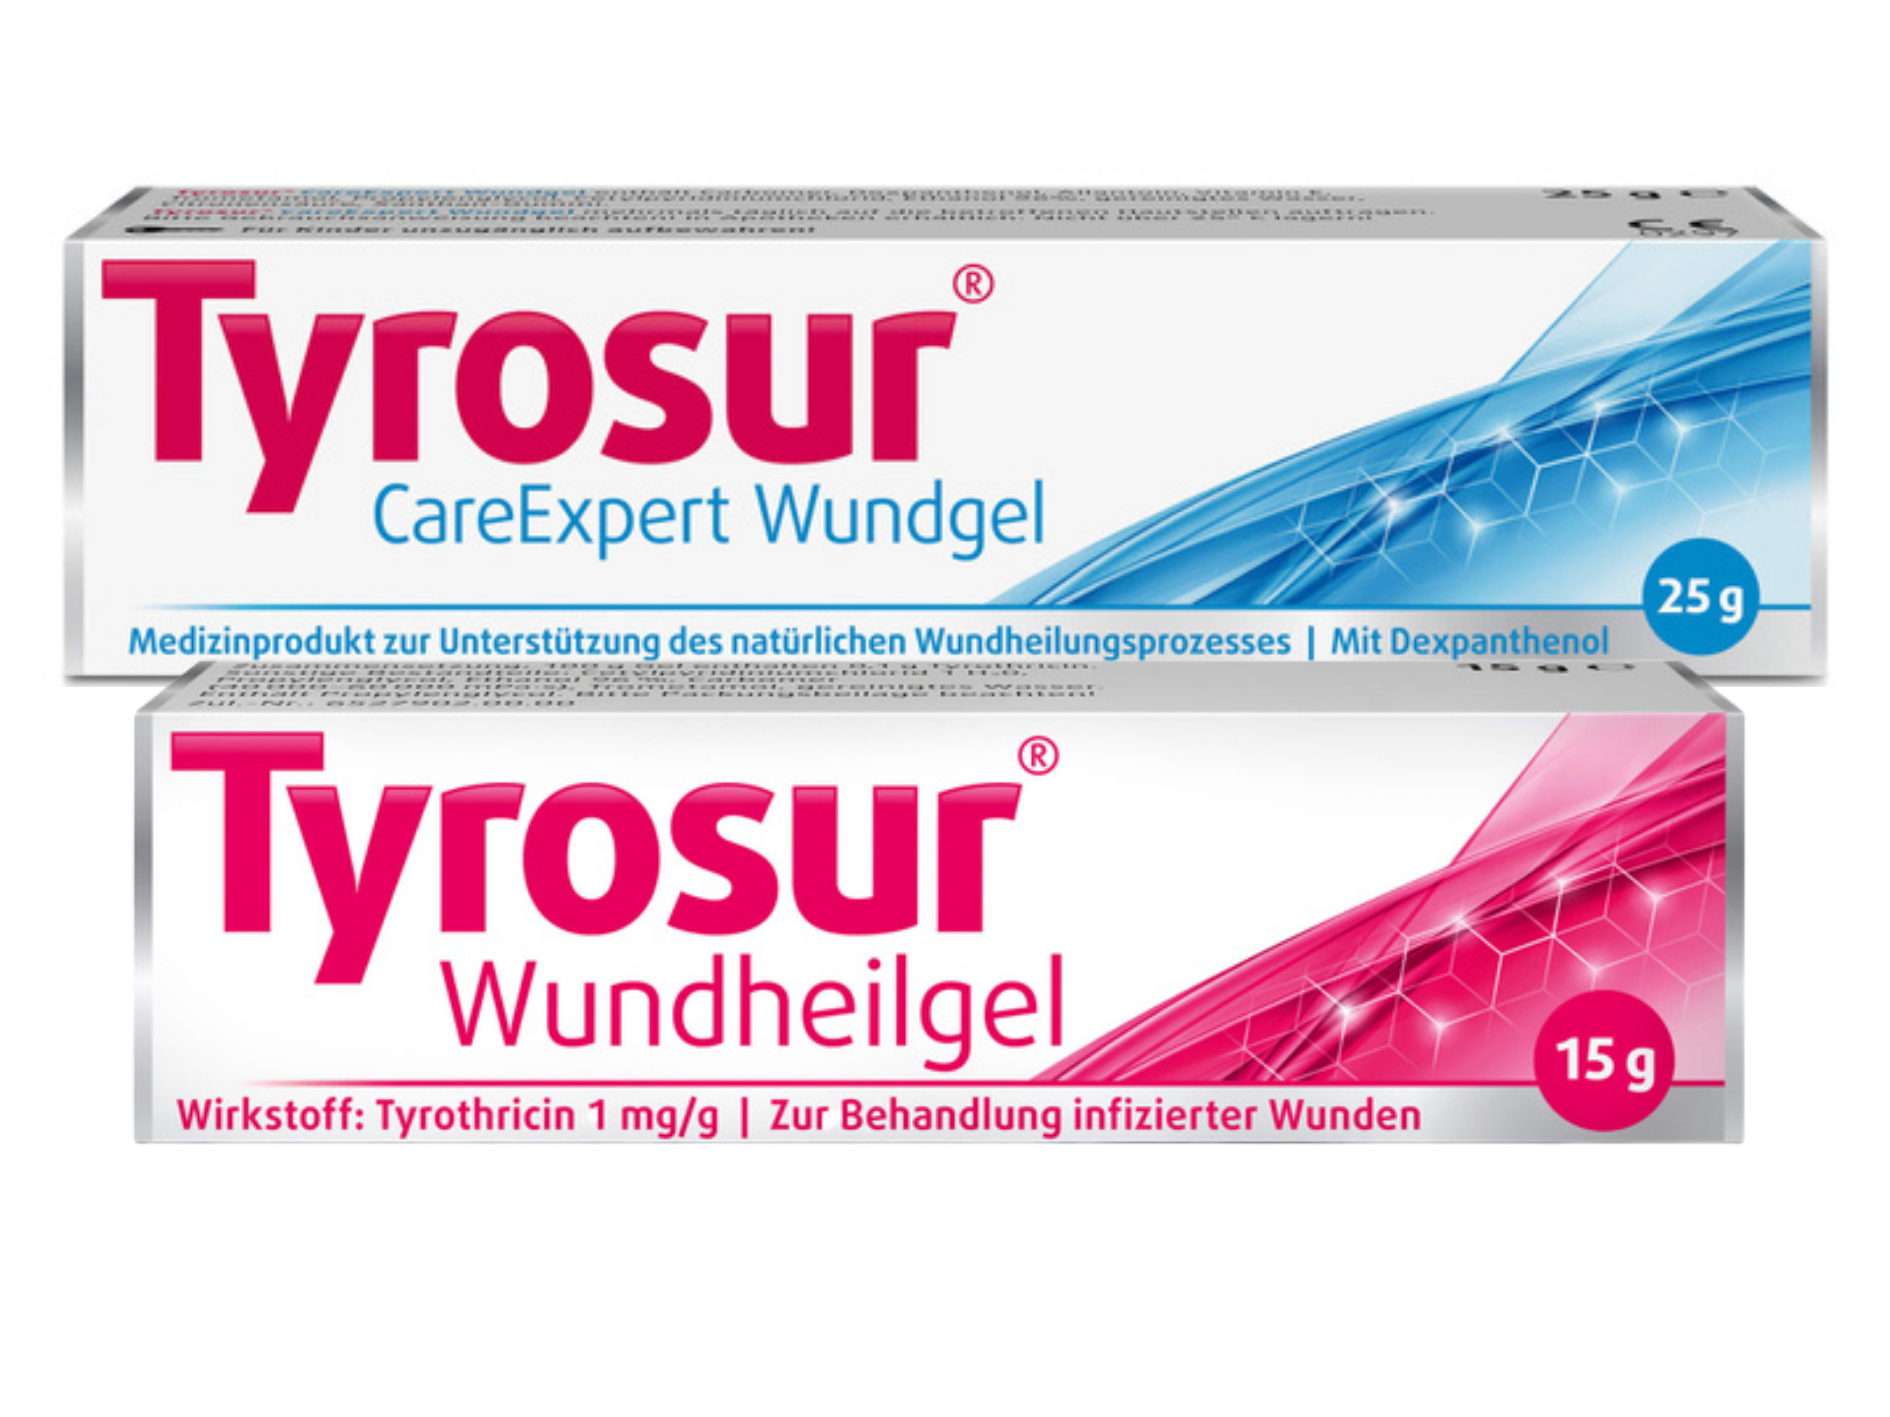 Sparset Wundversorgung - TYROSUR Wundheilgel 15 g + TYROSUR CareExpert Wundgel 25 g